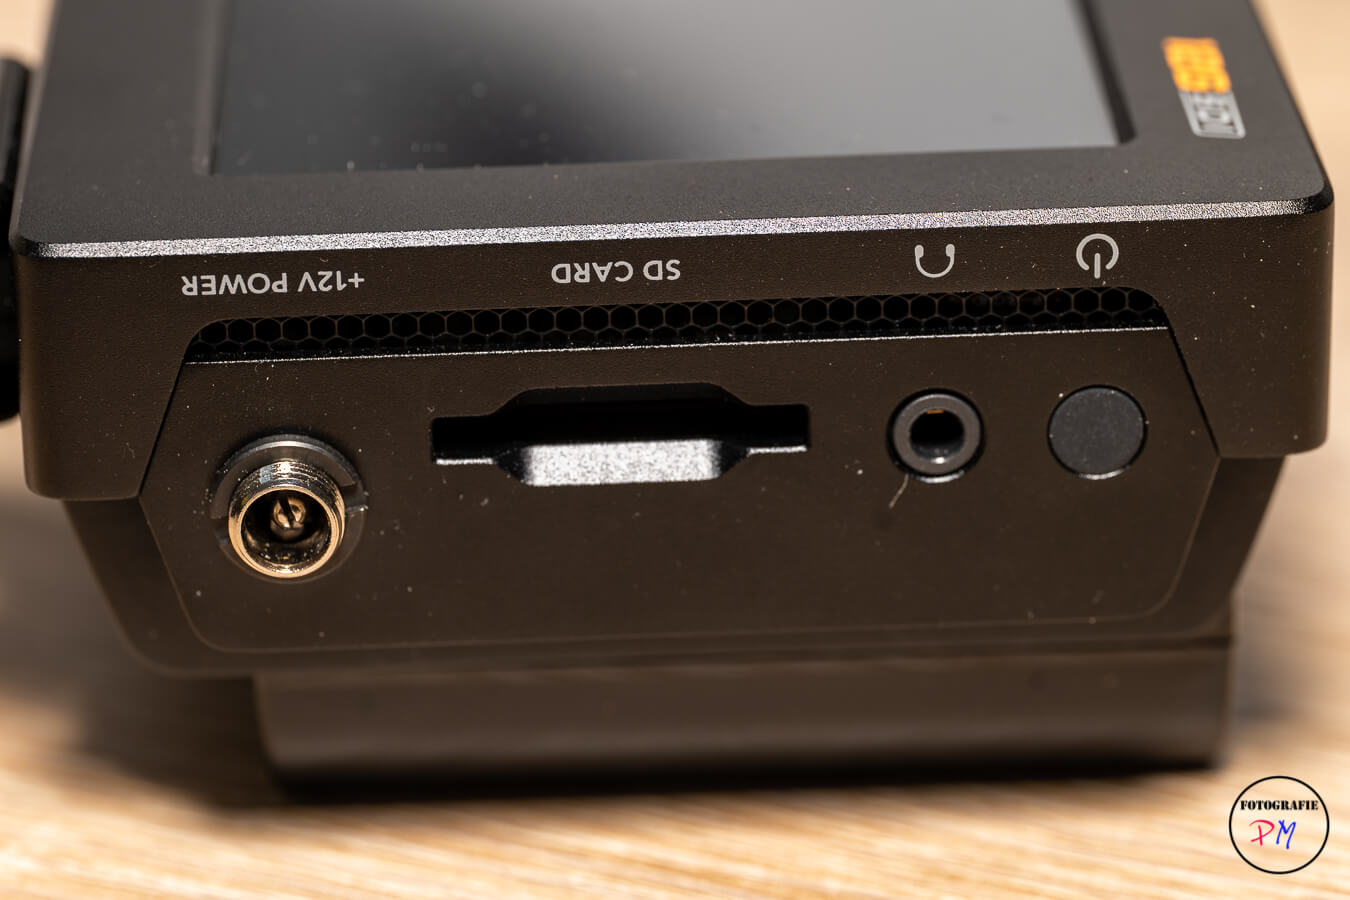 Blackmagic VideoAssist 12 G HDR externer Monitor mit Aufzeichnungsoption